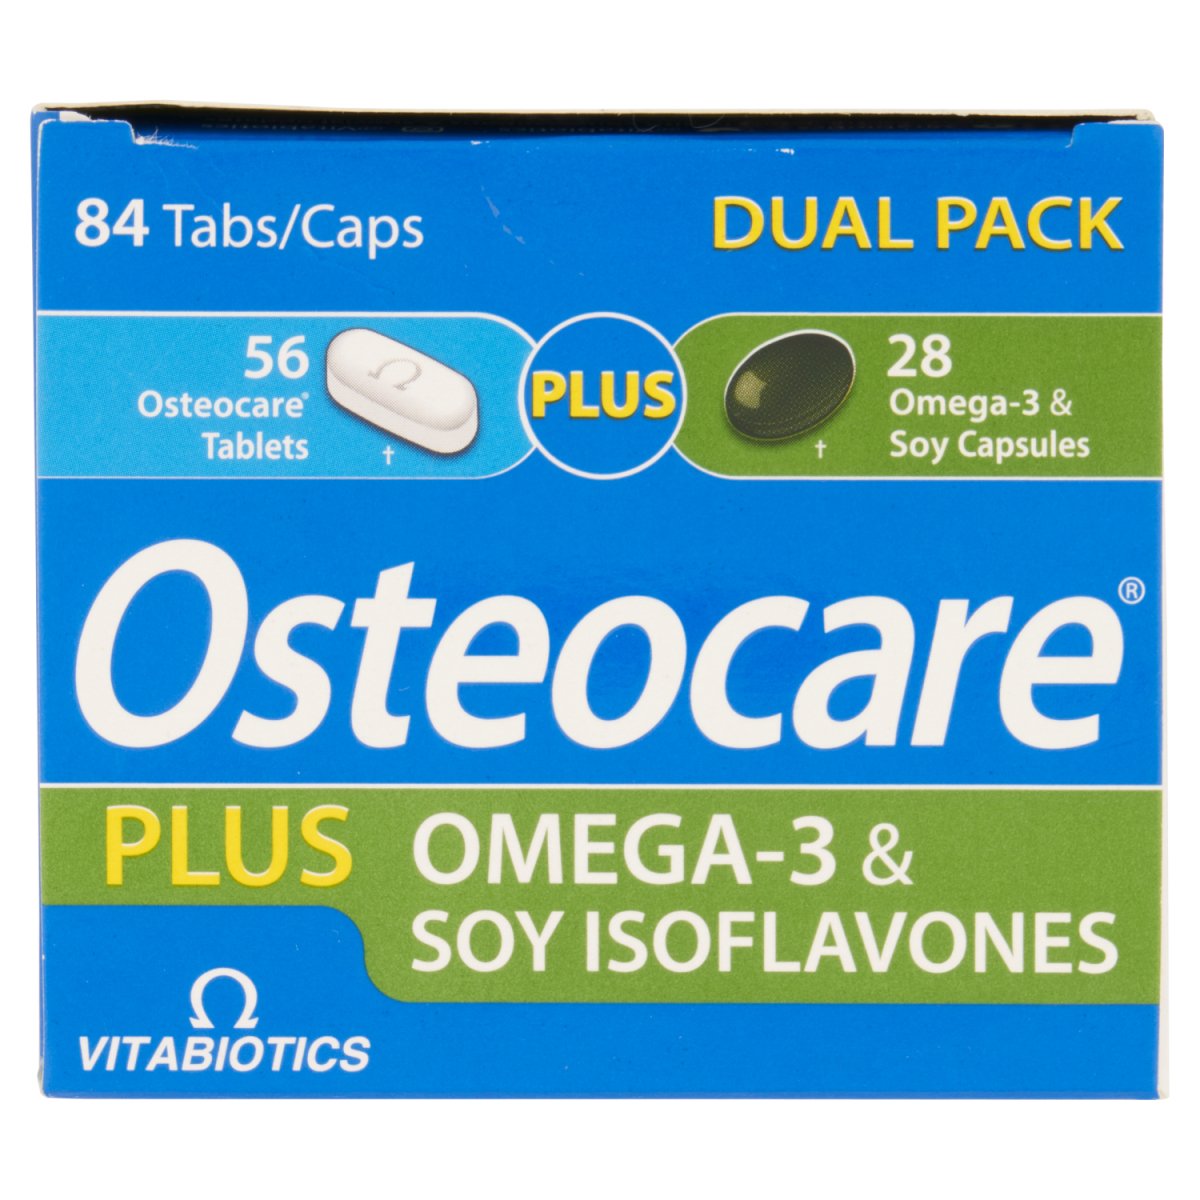 Osteocare Plus 84 - Intamarque - Wholesale 5021265227396